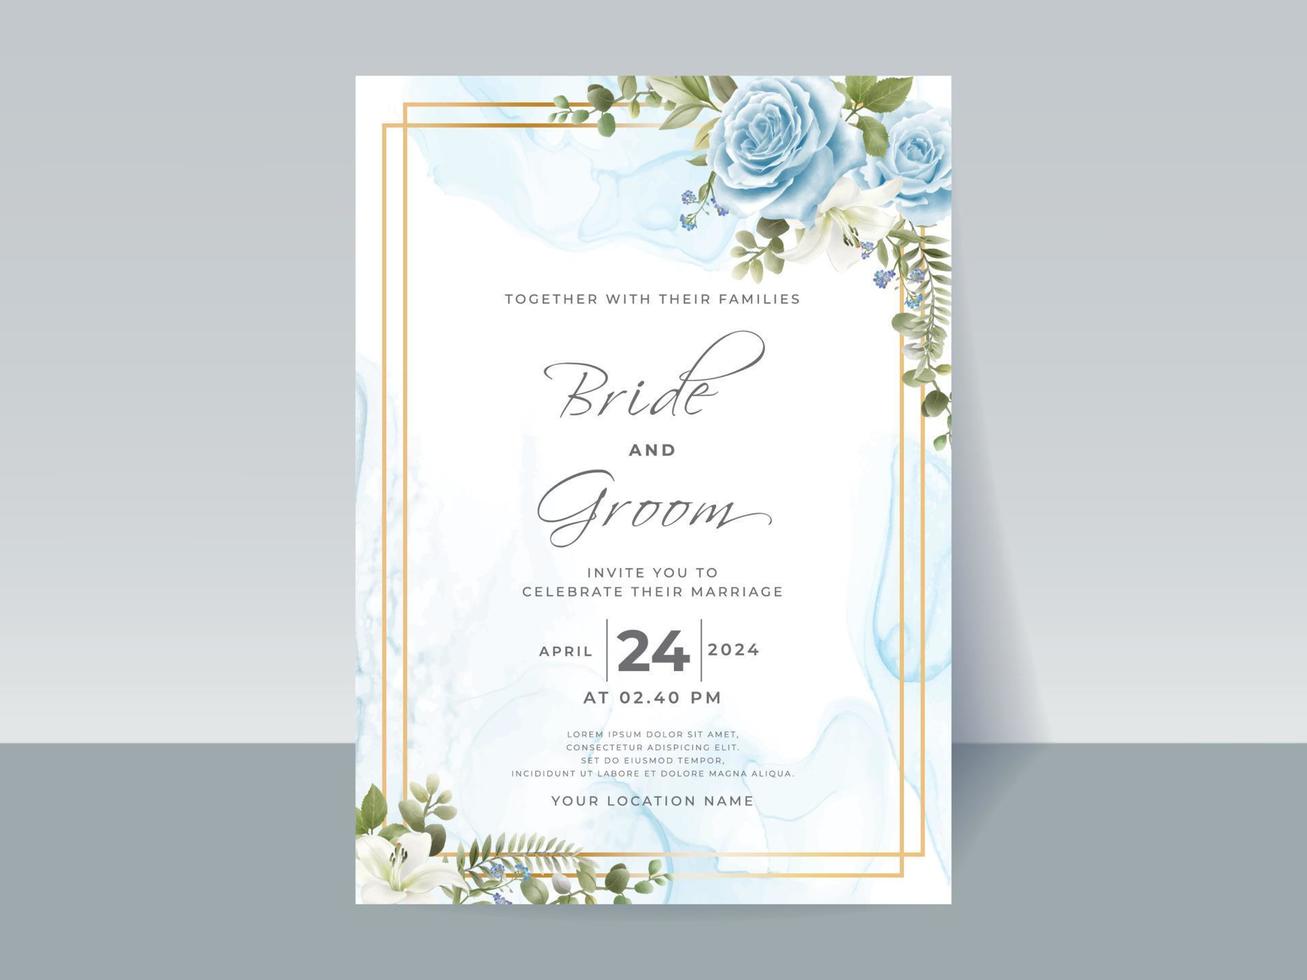 Handzeichnung blaue Rosen Hochzeitseinladungskarte vektor